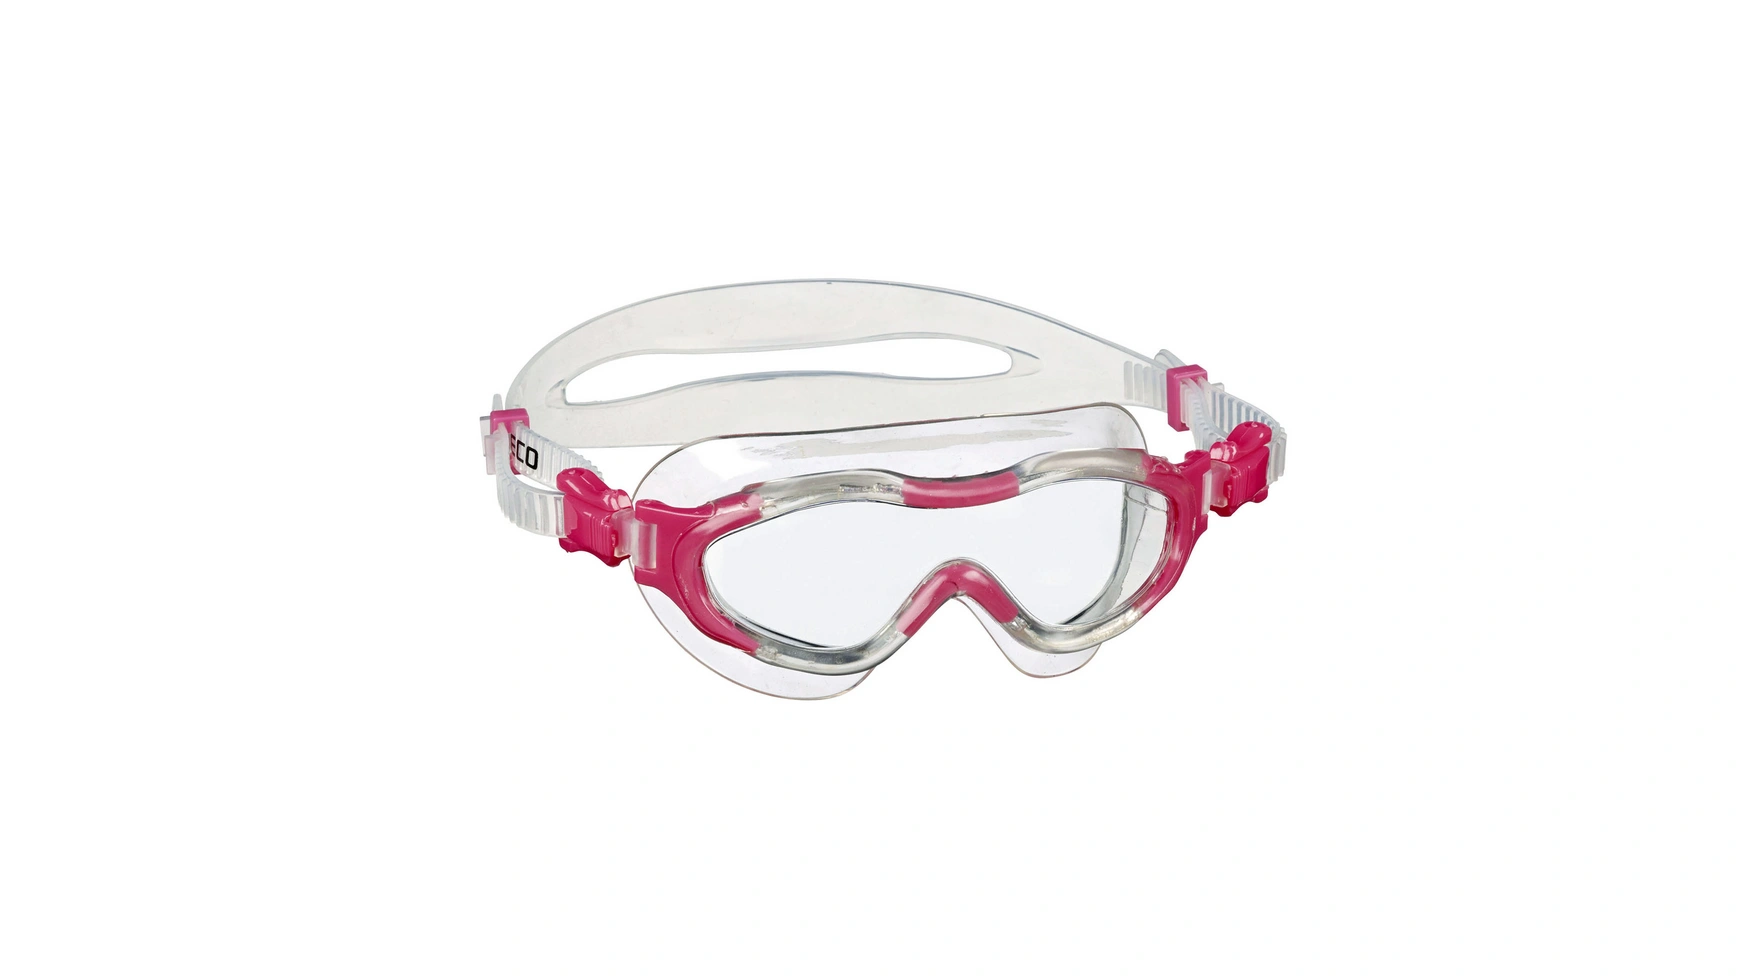 Beco Alicante 4+ Мягкие панорамные очки для детей от 4 лет и старше очки для плавания по рецепту профессиональные силиконовые противотуманные очки очки для плавания очки для дайвинга для женщин и мужчин п